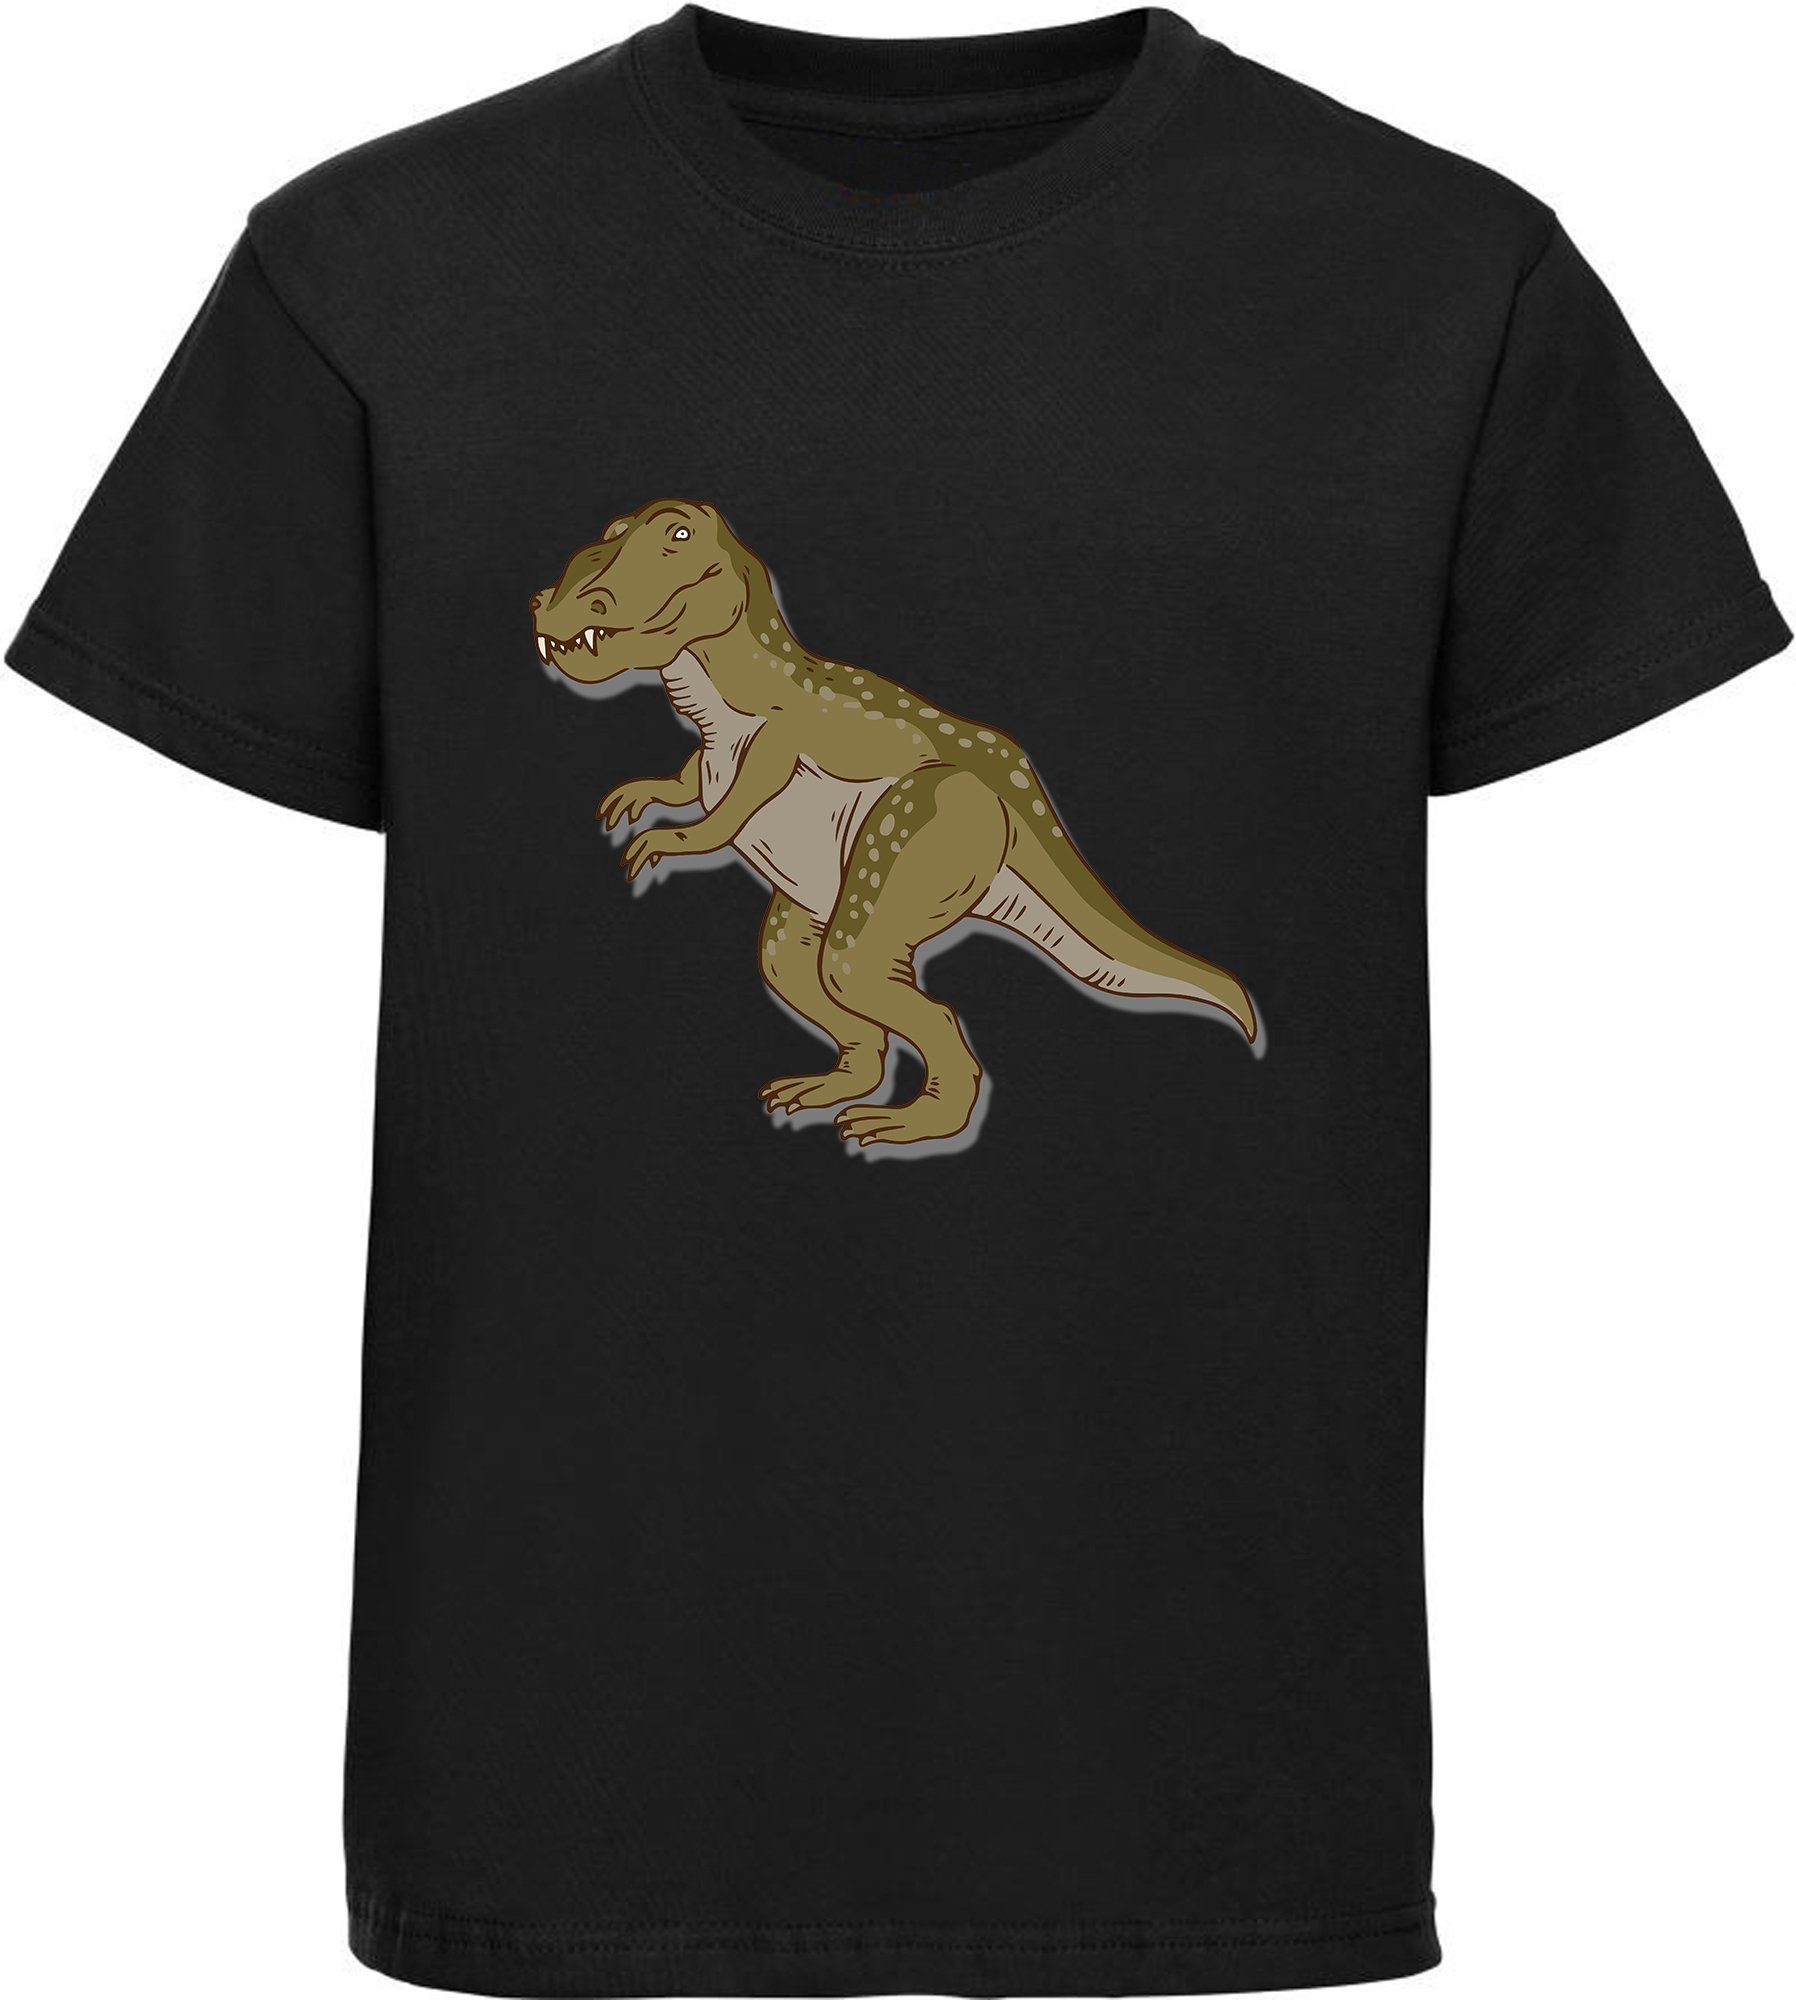 MyDesign24 Print-Shirt bedrucktes Kinder T-Shirt mit Tyrannosaurus Rex Baumwollshirt mit Dino, schwarz, weiß, rot, blau, i69